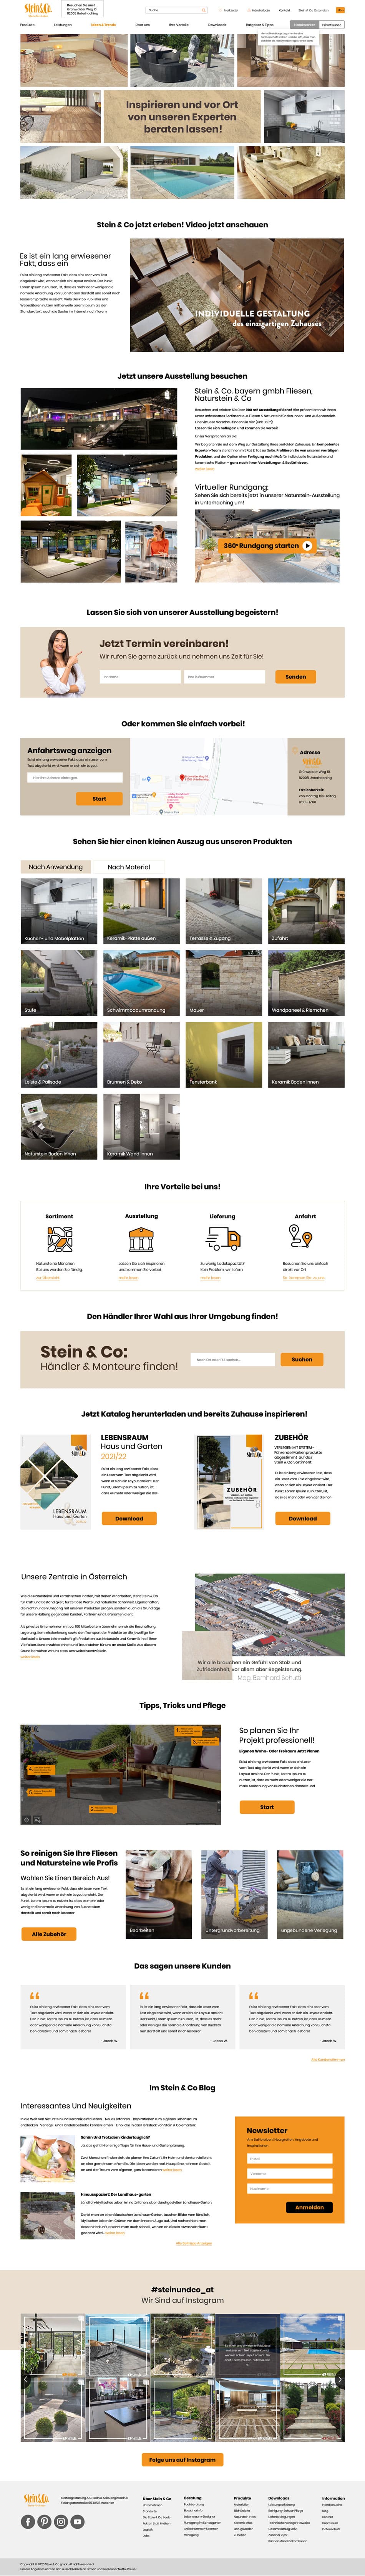 Webdesign für "Stein & Co."